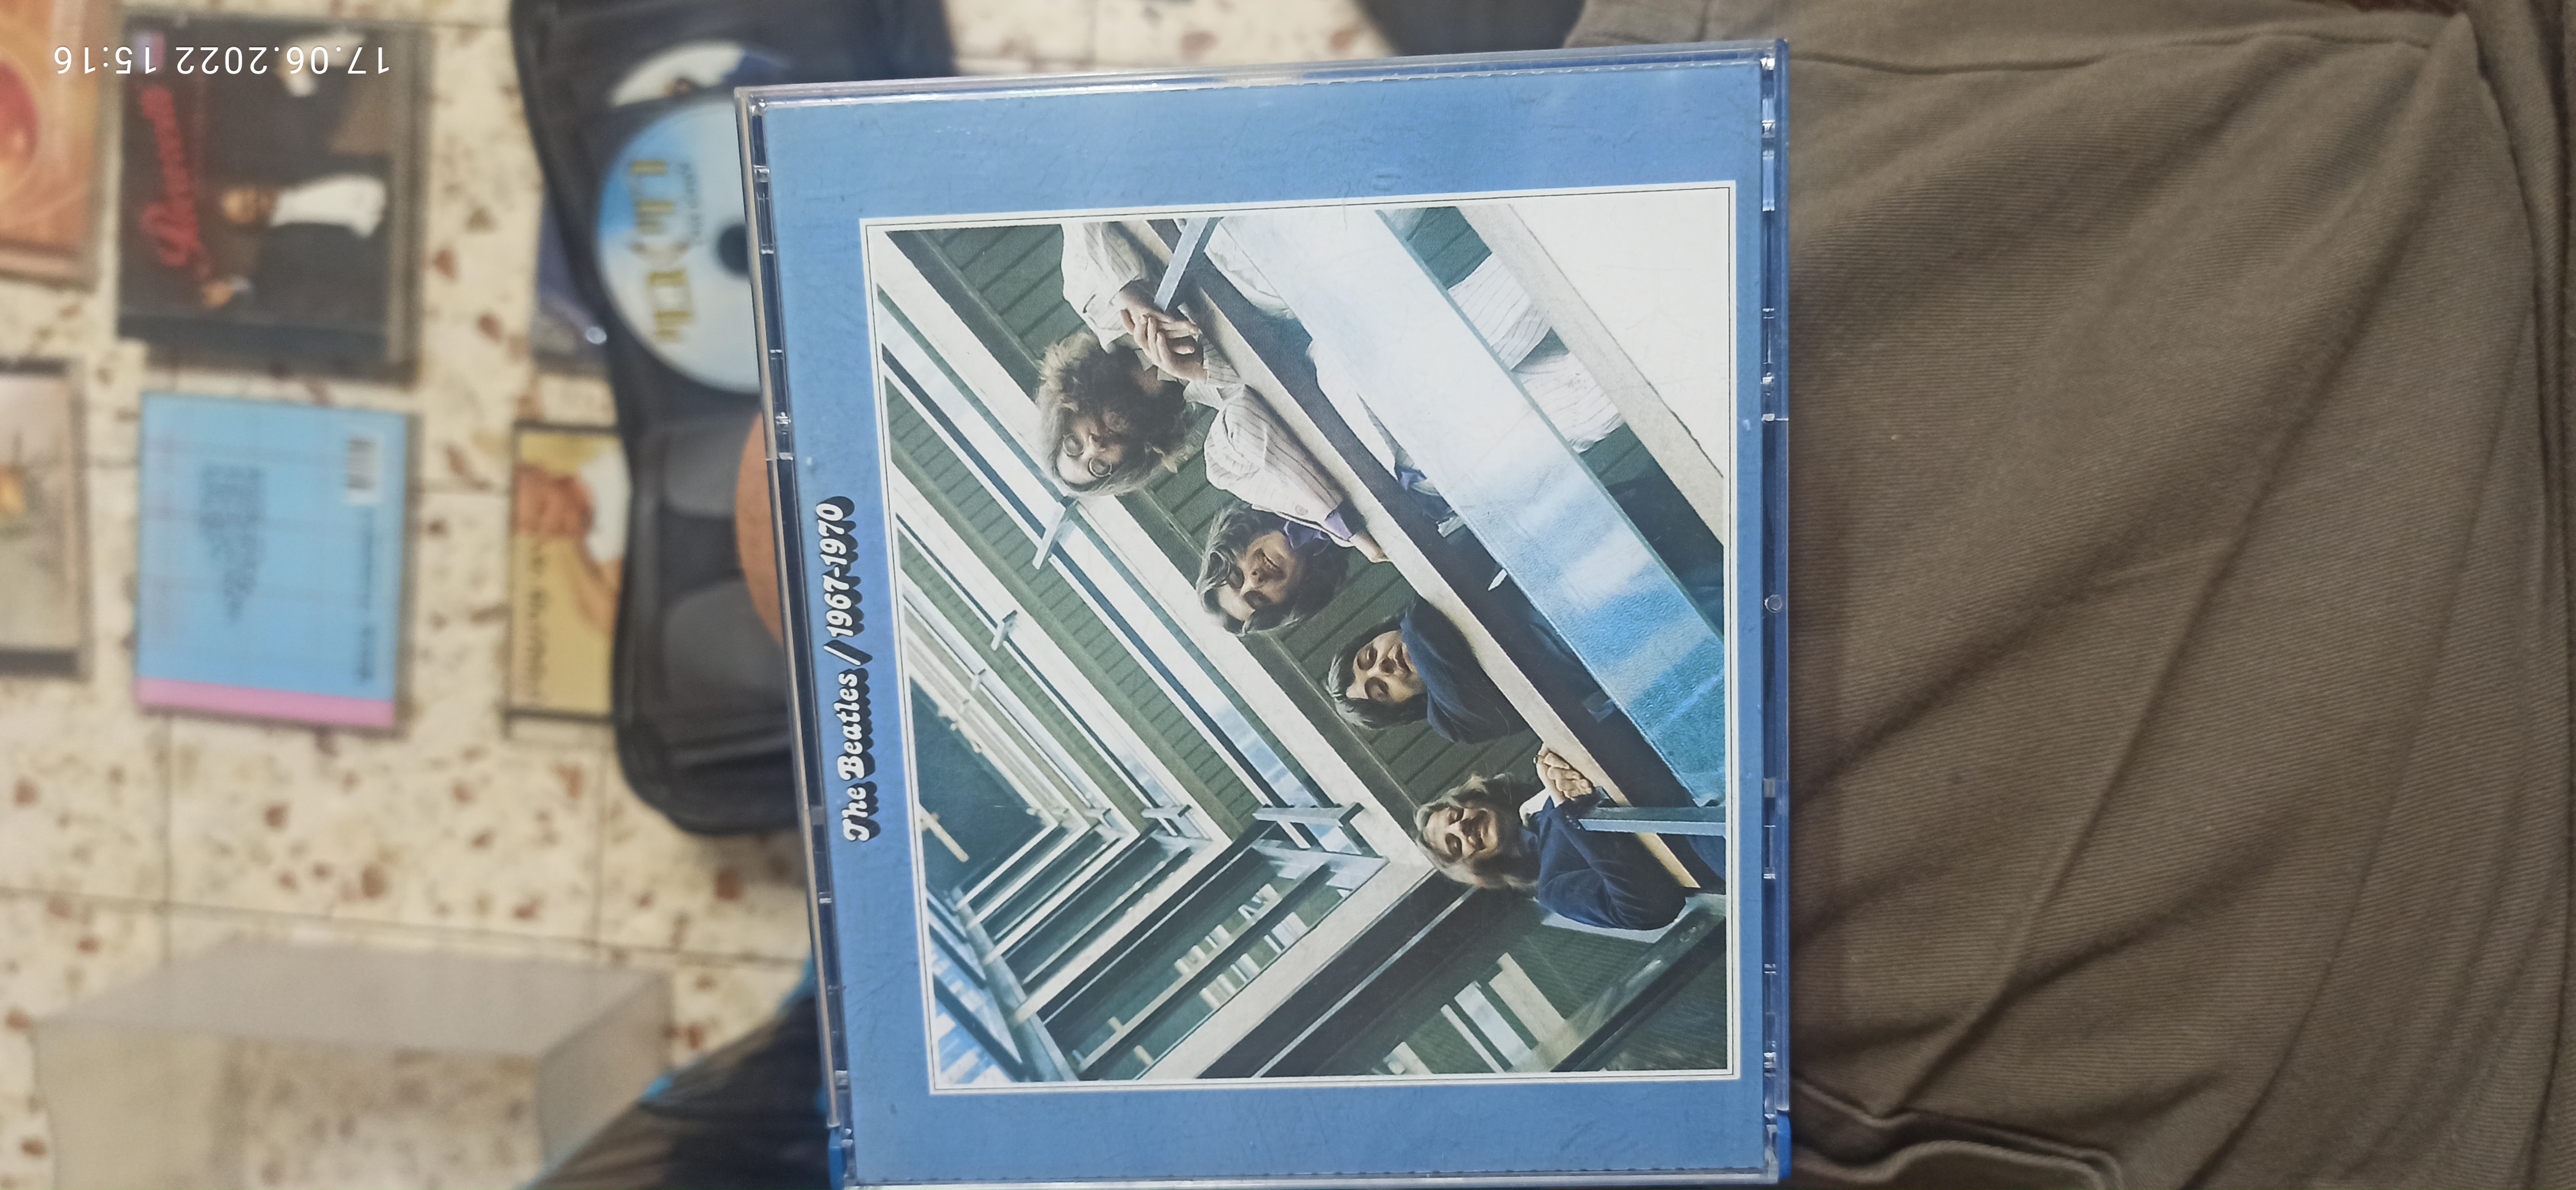 תמונה 1 ,אוסף שירי הביטלס 1967-1970 למכירה ביבנה מוסיקה וסרטים  cd